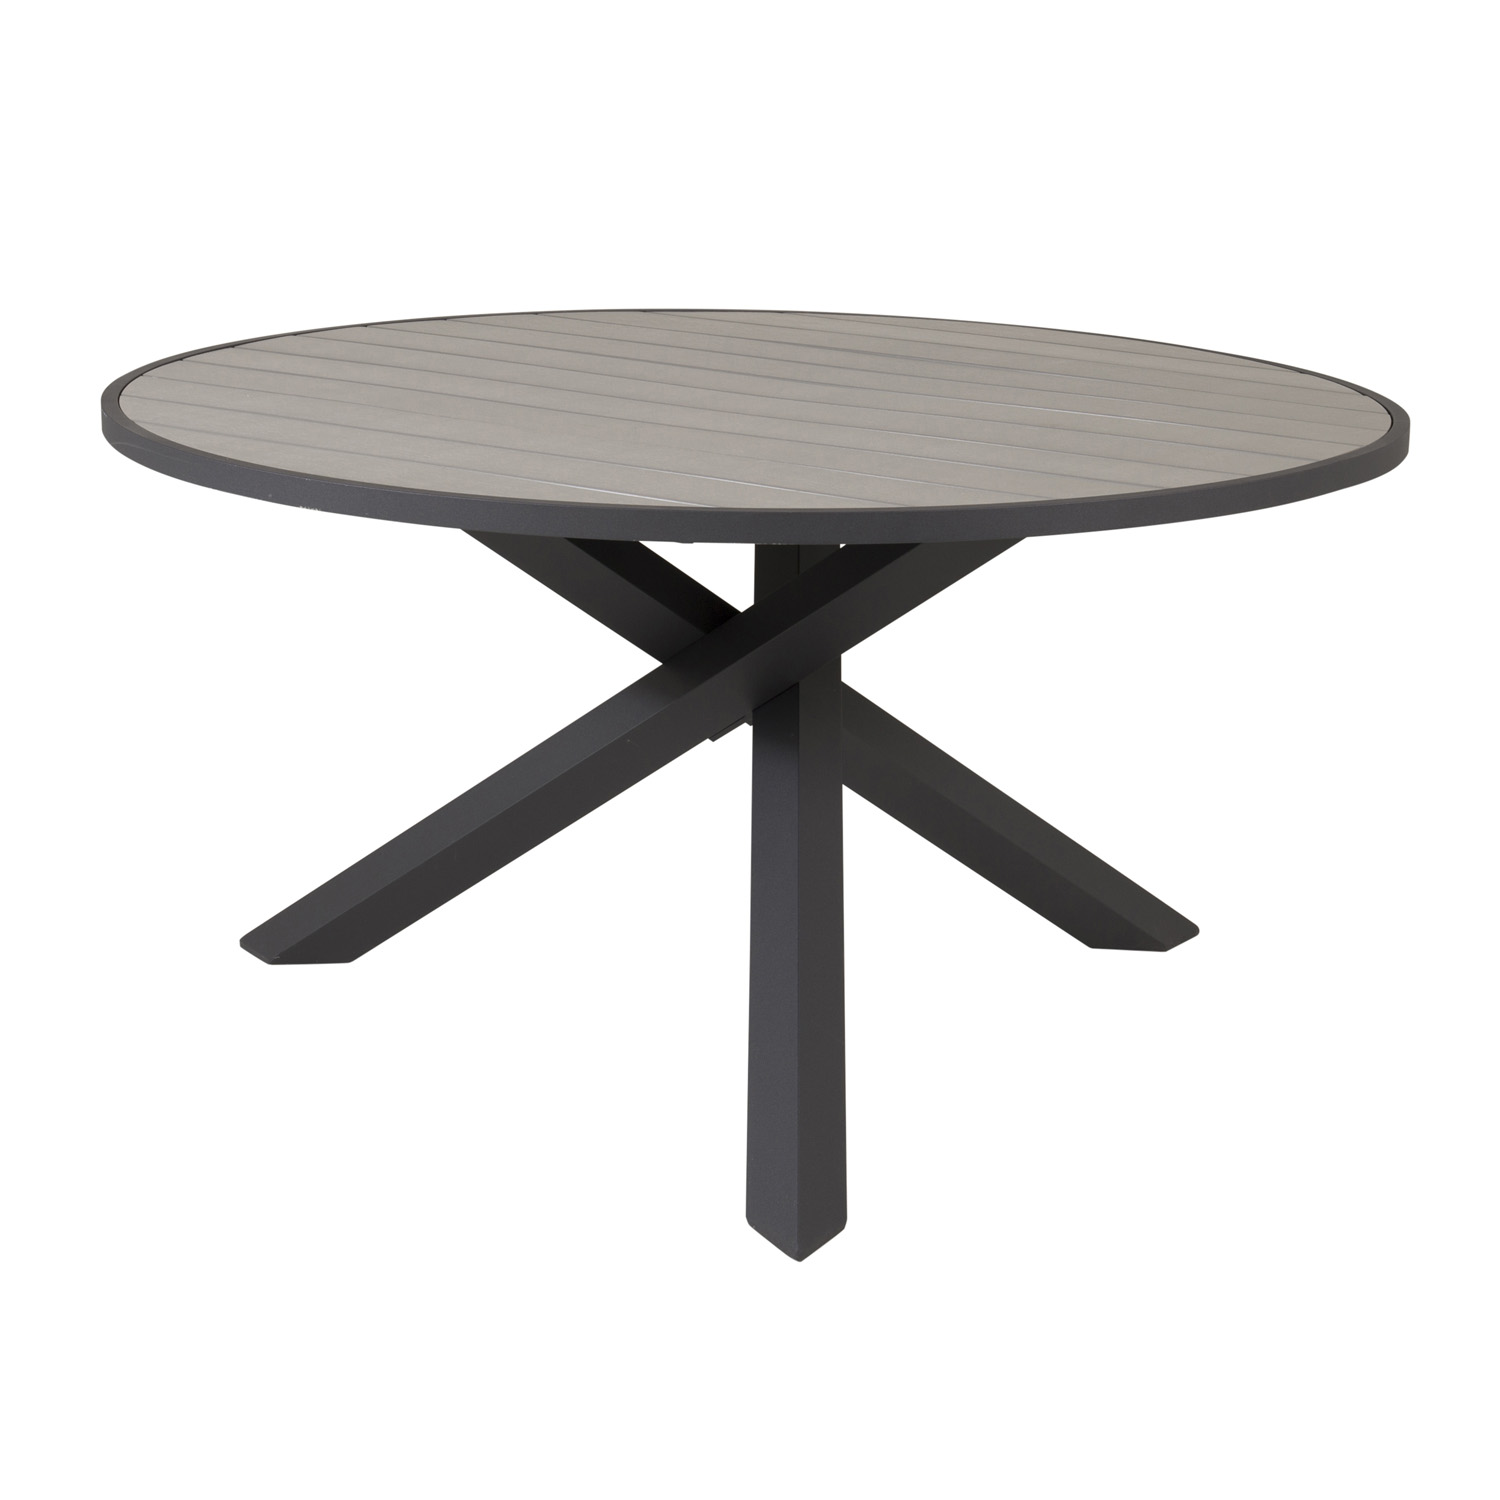 VENTURE DESIGN Parma havebord - grå aintwood og sort aluminium (Ø140)